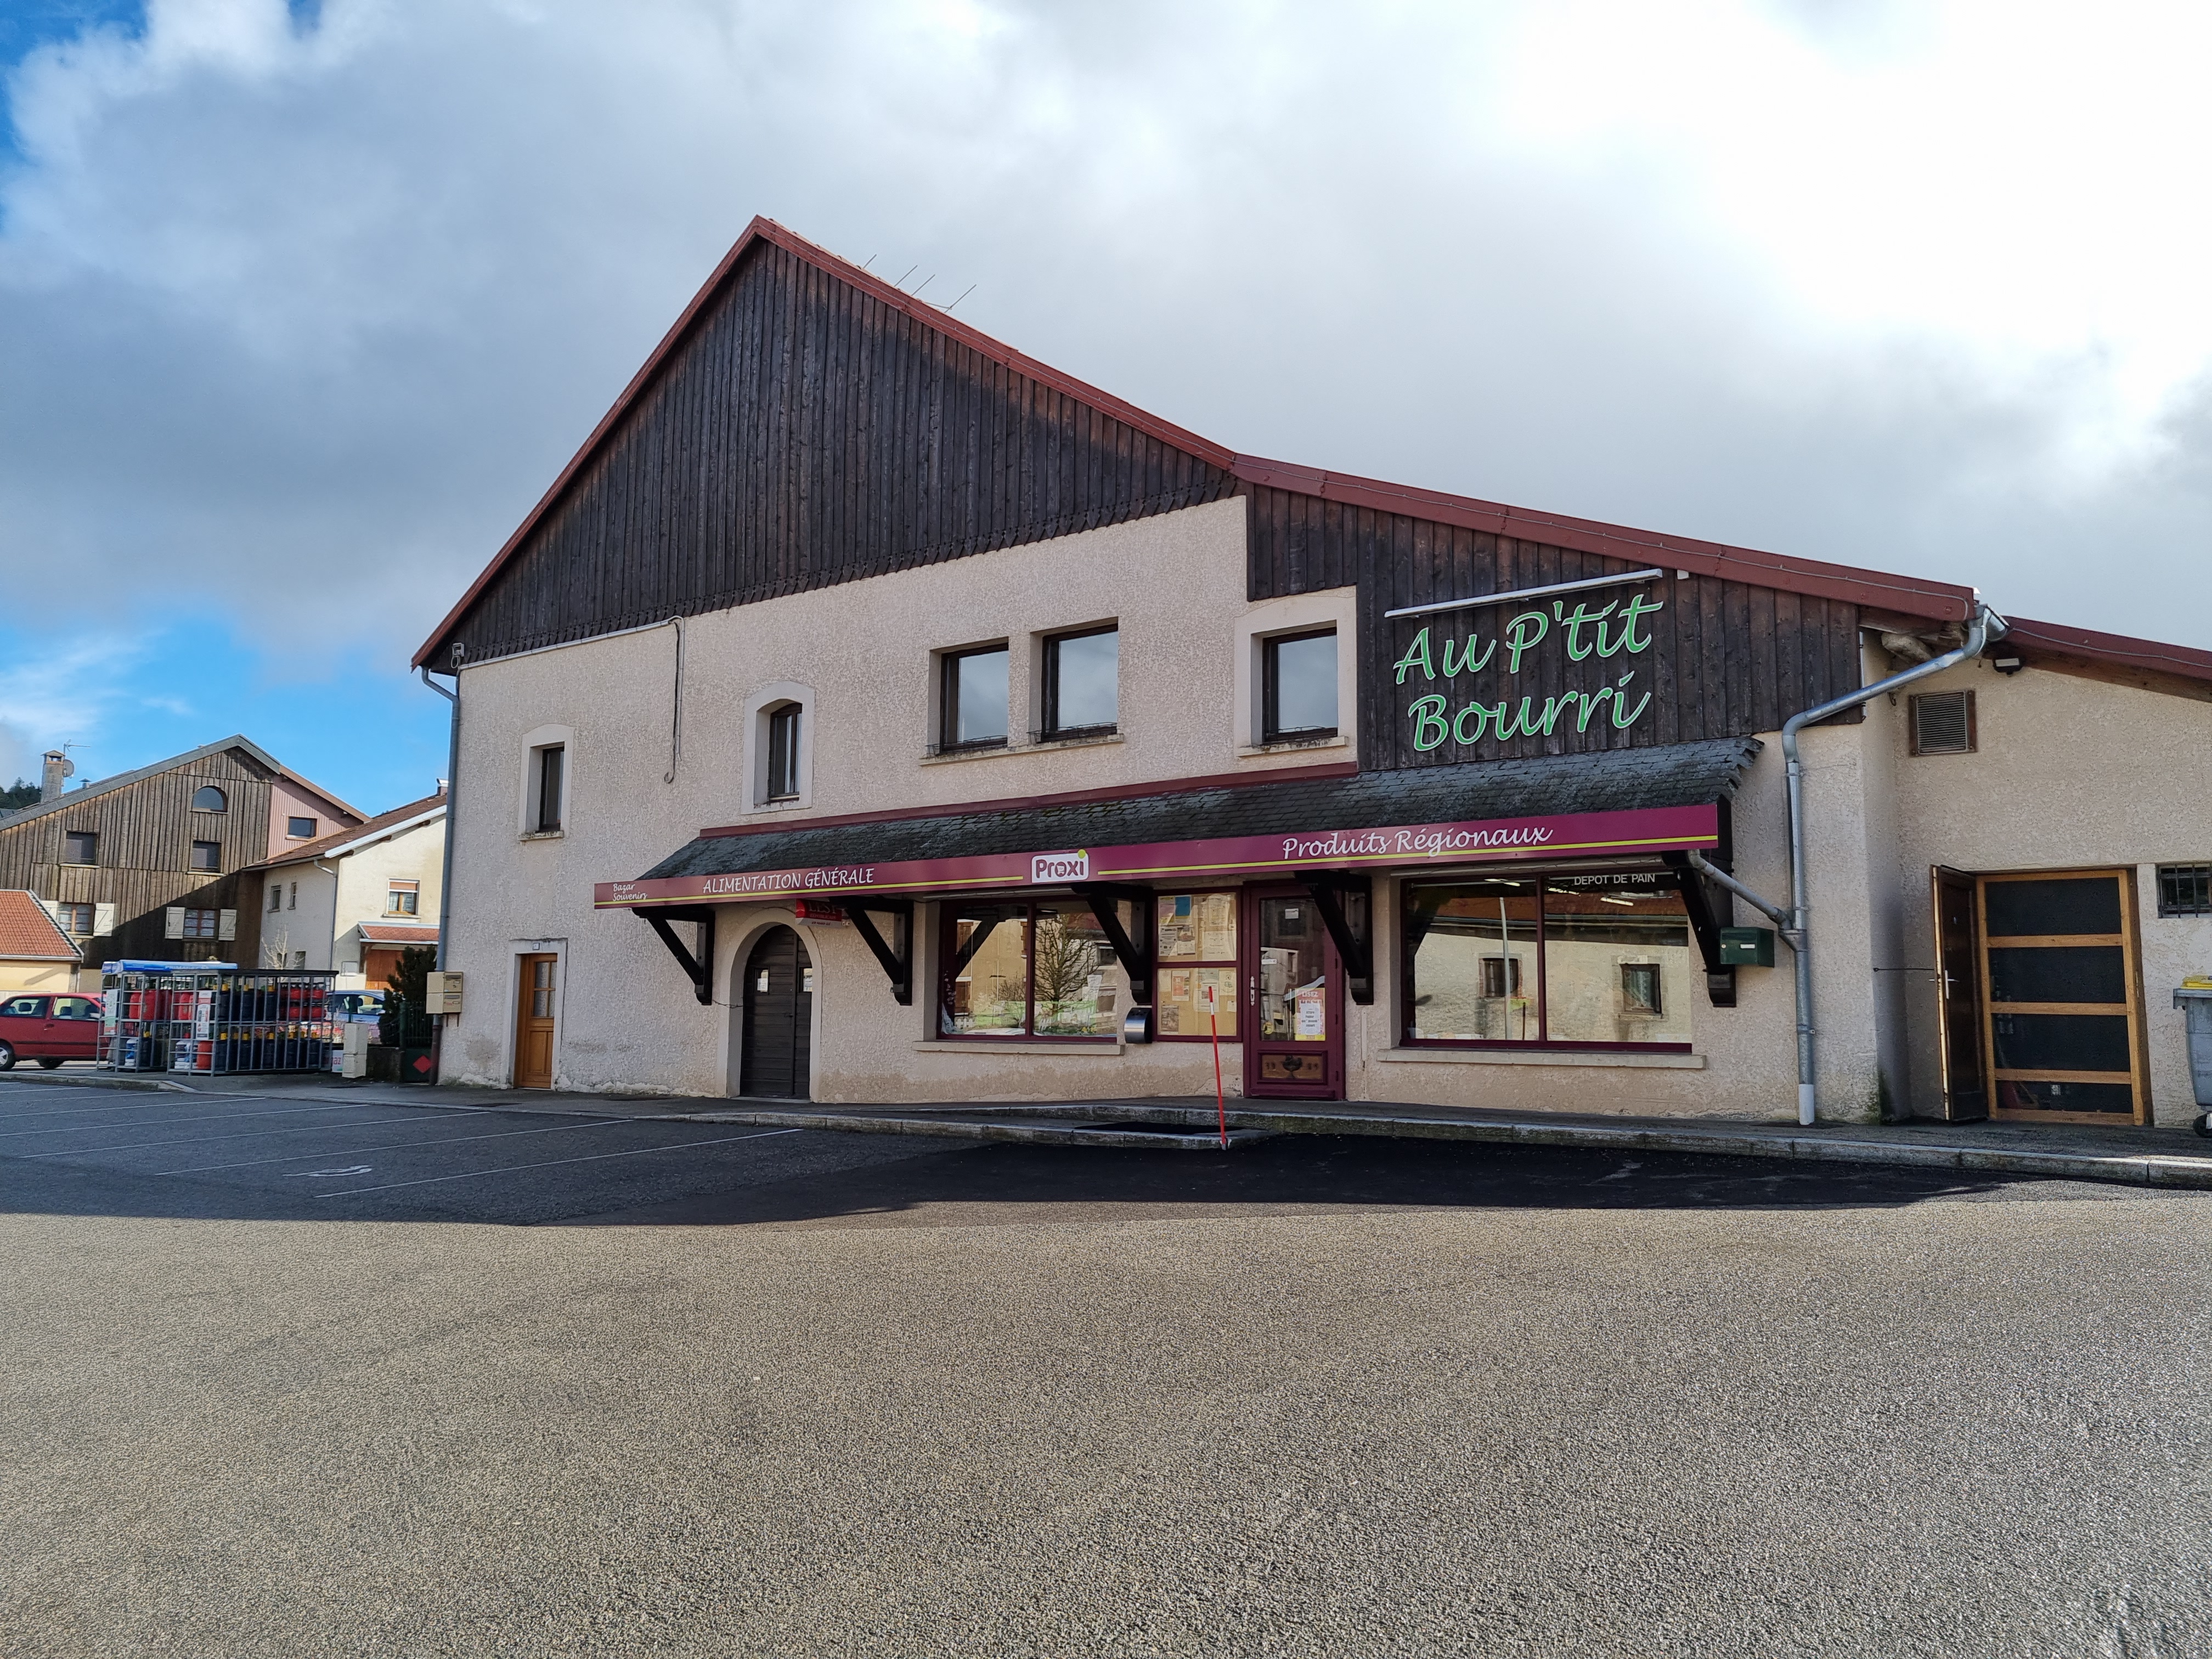 A vendre fond de commerce superette Proxi situé au centre du village de LES FOURGS dans le Haut-Doubs.

Ce village de moyenne montagne (1100m d'altitude) situé à moins de 3 kms de la frontière Suisse, sur un axe très fréquenté, dispose d'une station de ski familiale avec domaine skiable (Alpin et Fond),  école, crèche, bibliothèque, poste, office du tourisme, boulangerie-pâtisserie, restaurants, location de skis,...


Le magasin d'une surface de 150m² dispose d'une large gamme de produits d'alimentation générale :
- produits surgelés,
- espace fruits et légumes,
- produits frais, 
- produits régionaux,
- droguerie , bazar, 
- souvenirs,
- dépôt de gaz, 
- dépôt de pain, 
- rayon fromage et charcuterie à la coupe,
- café à l'emporter / sur place,
- journal quotidien,
- distributeurs de produits vrac,...


Ce commerce bénéficie également d'un espace bureau avec rangements, d'une réserve de 40m², ainsi qu'un grand parking (public).